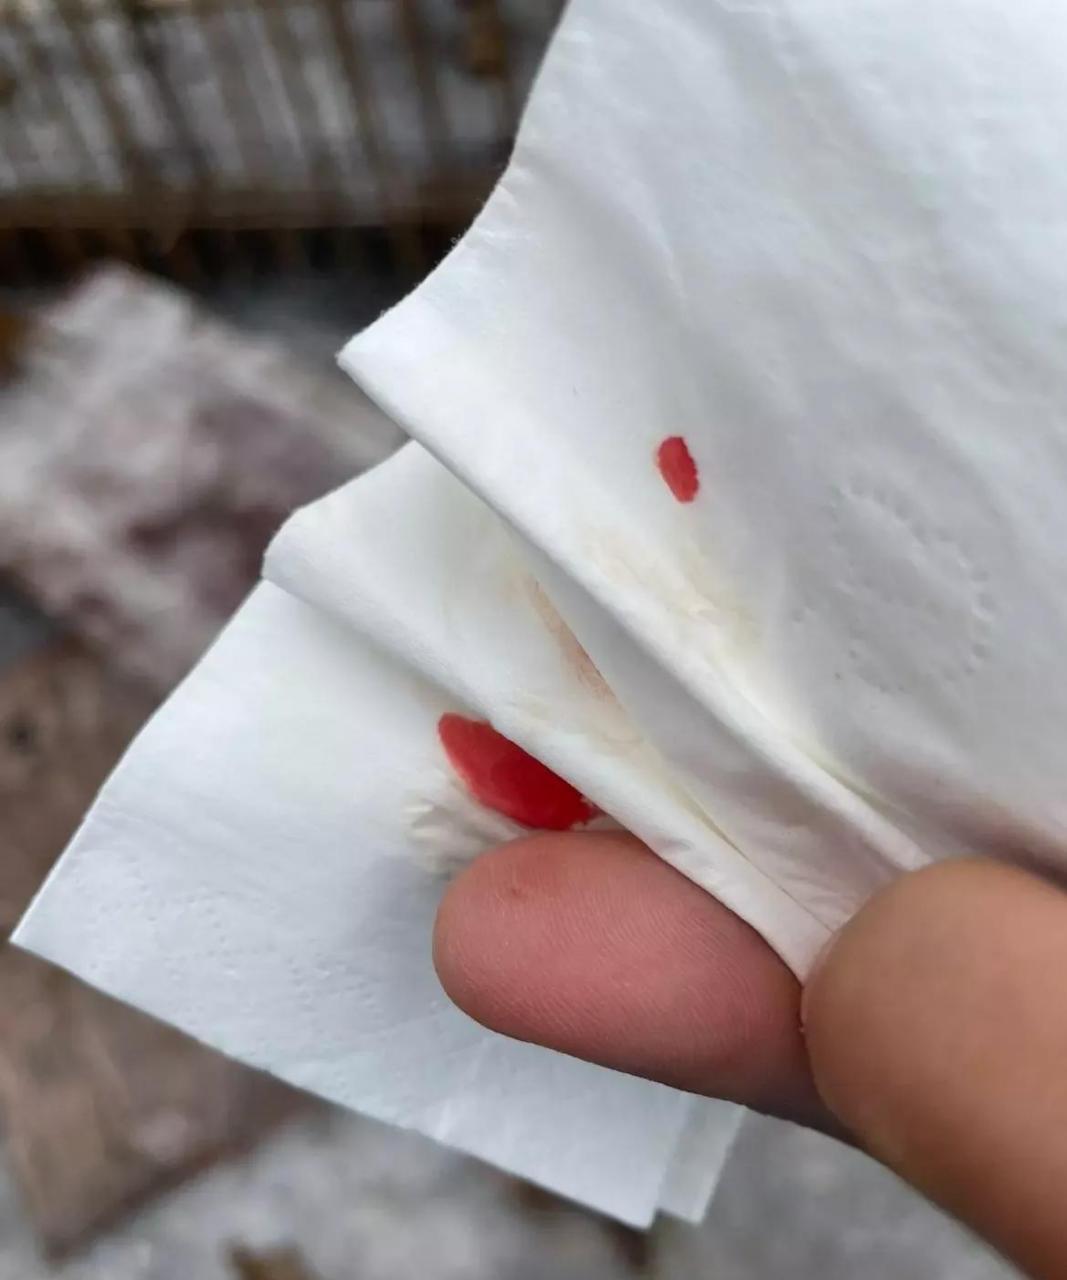 网友:手被这个扎出血了,挂什么科?